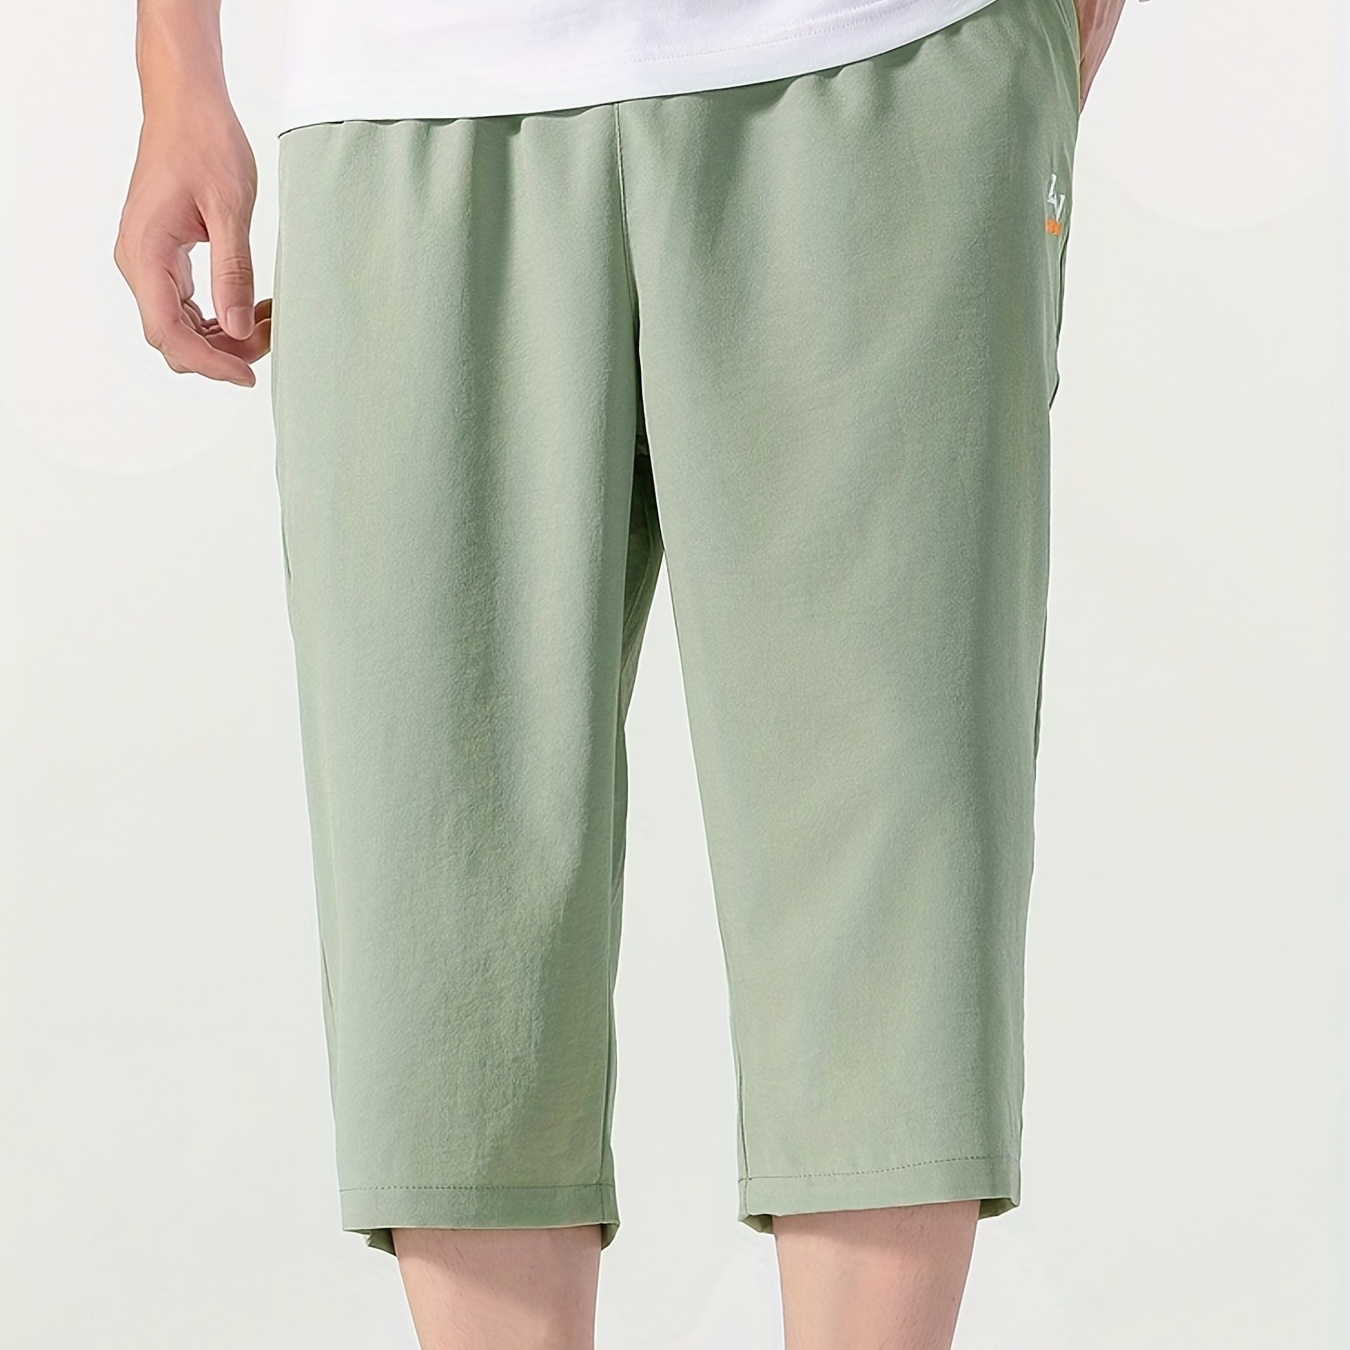 Men's Comfy Capri Pants Summer Drawstring Casual Loose Pants